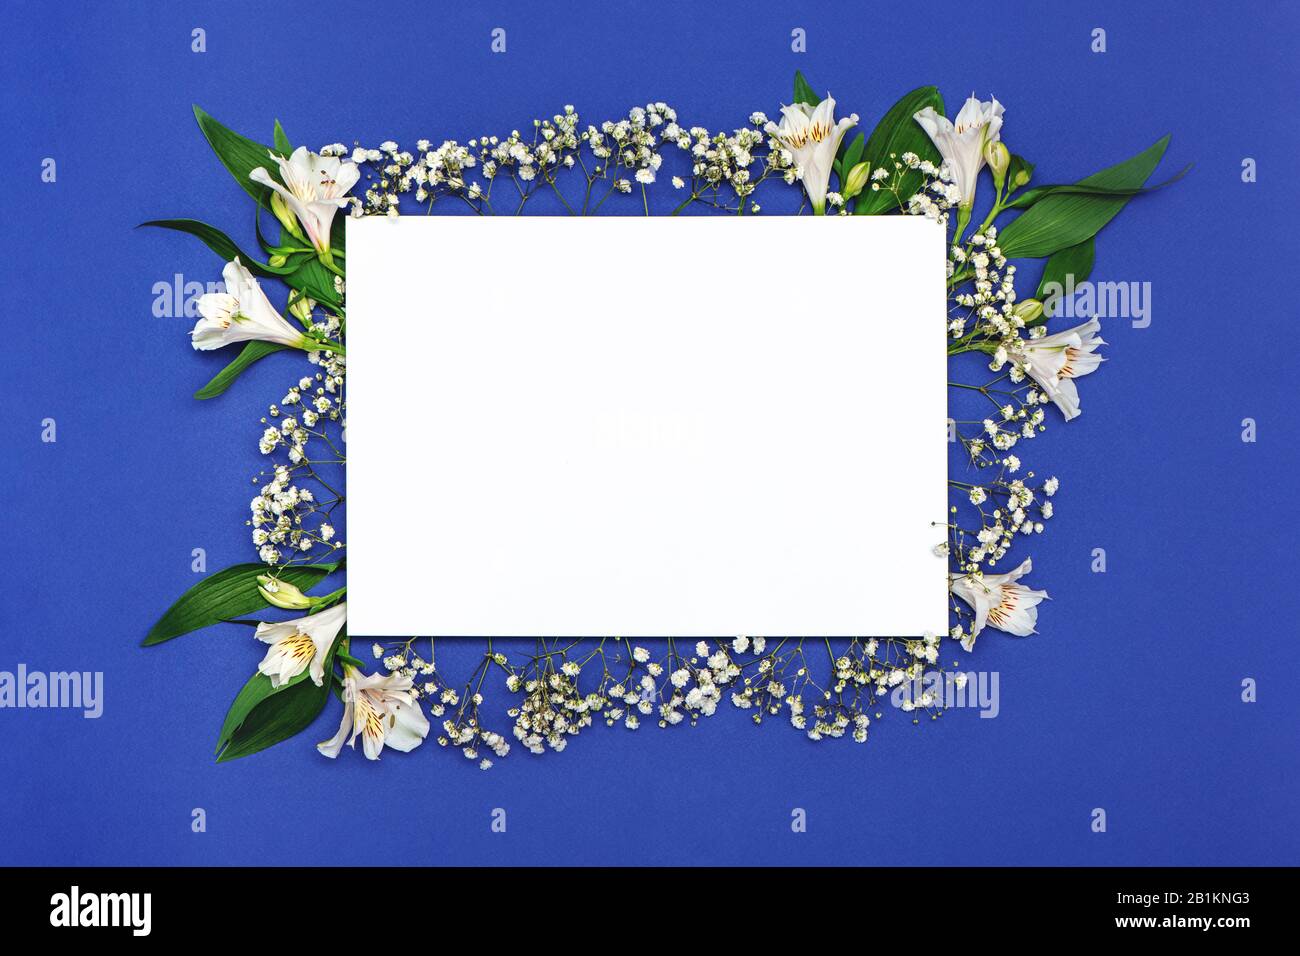 Leeres viereckiges Blatt Papier mit Zusammensetzung aus weißen Blumen auf blauem Grund. Happy Mothers Day, Frühling, osterkonzept. Stockfoto